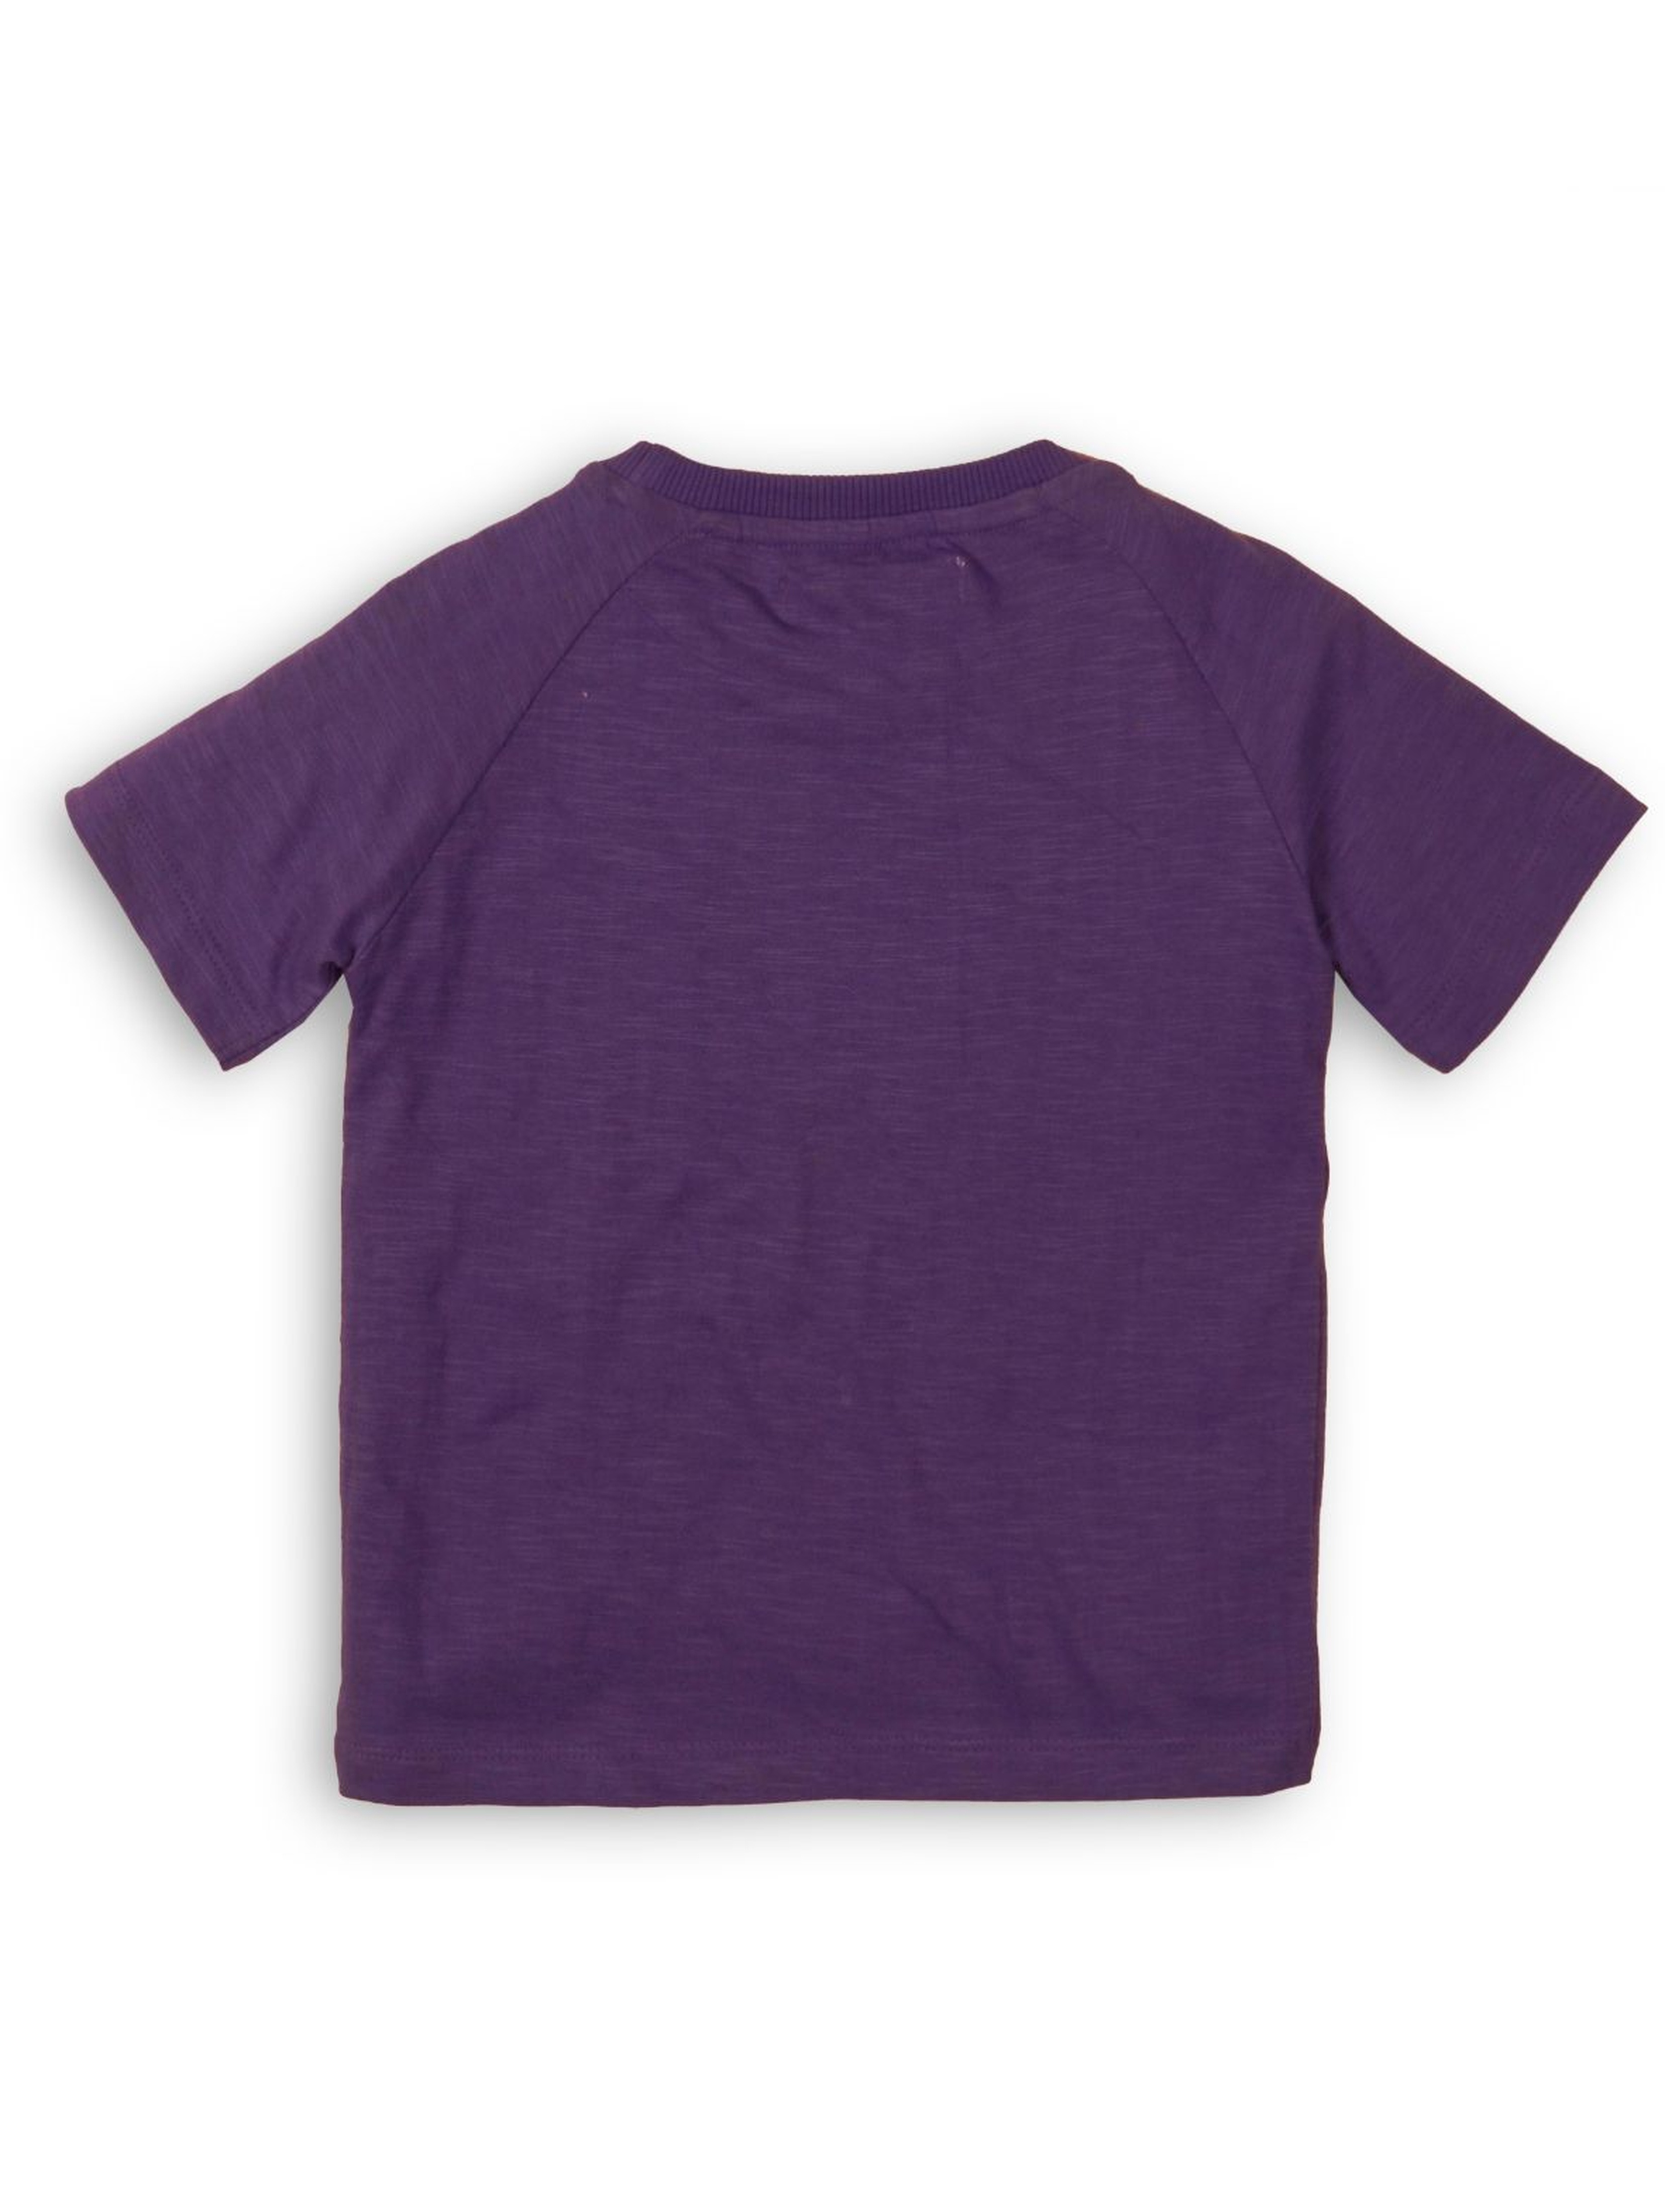 Fioletowy t-shirt z kolorowym nadrukiem